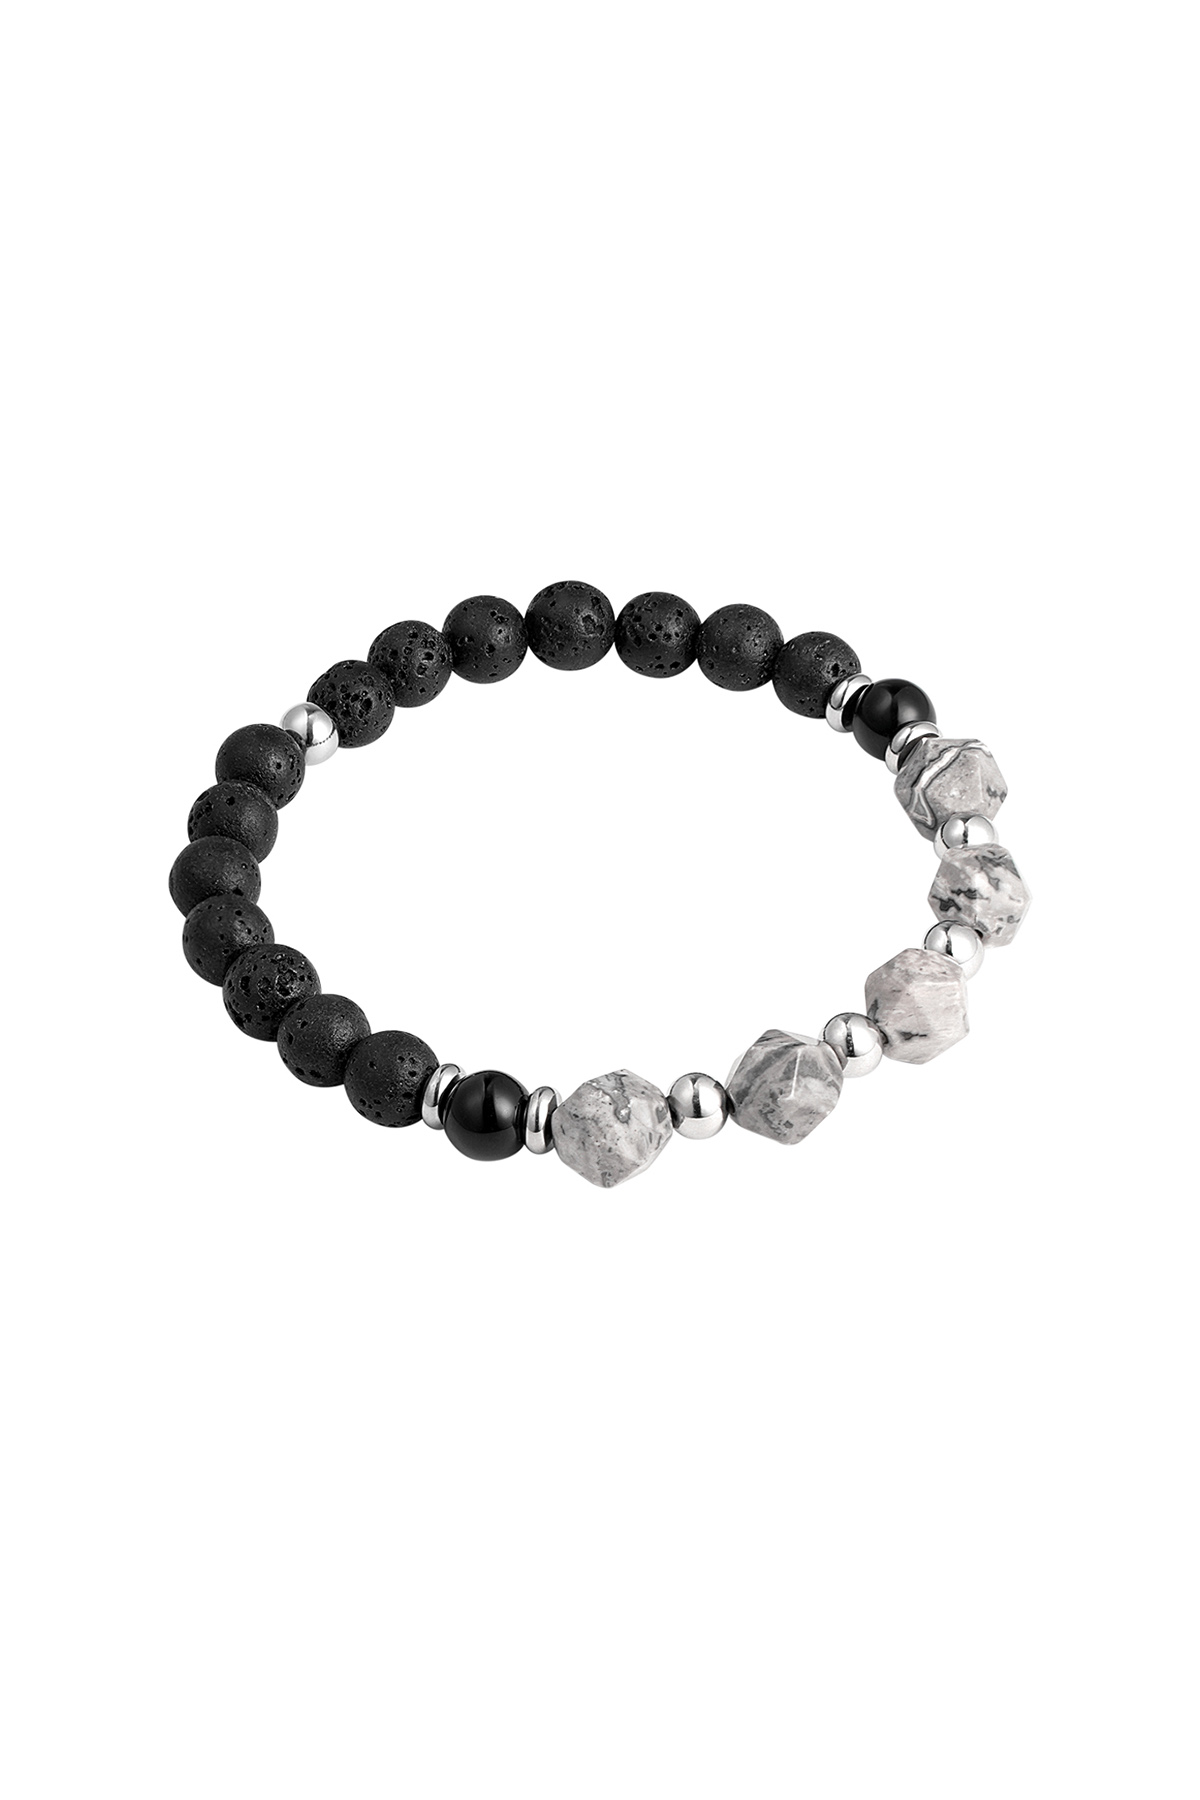 Herrenarmband Perlen schwarz/Farbe - grau